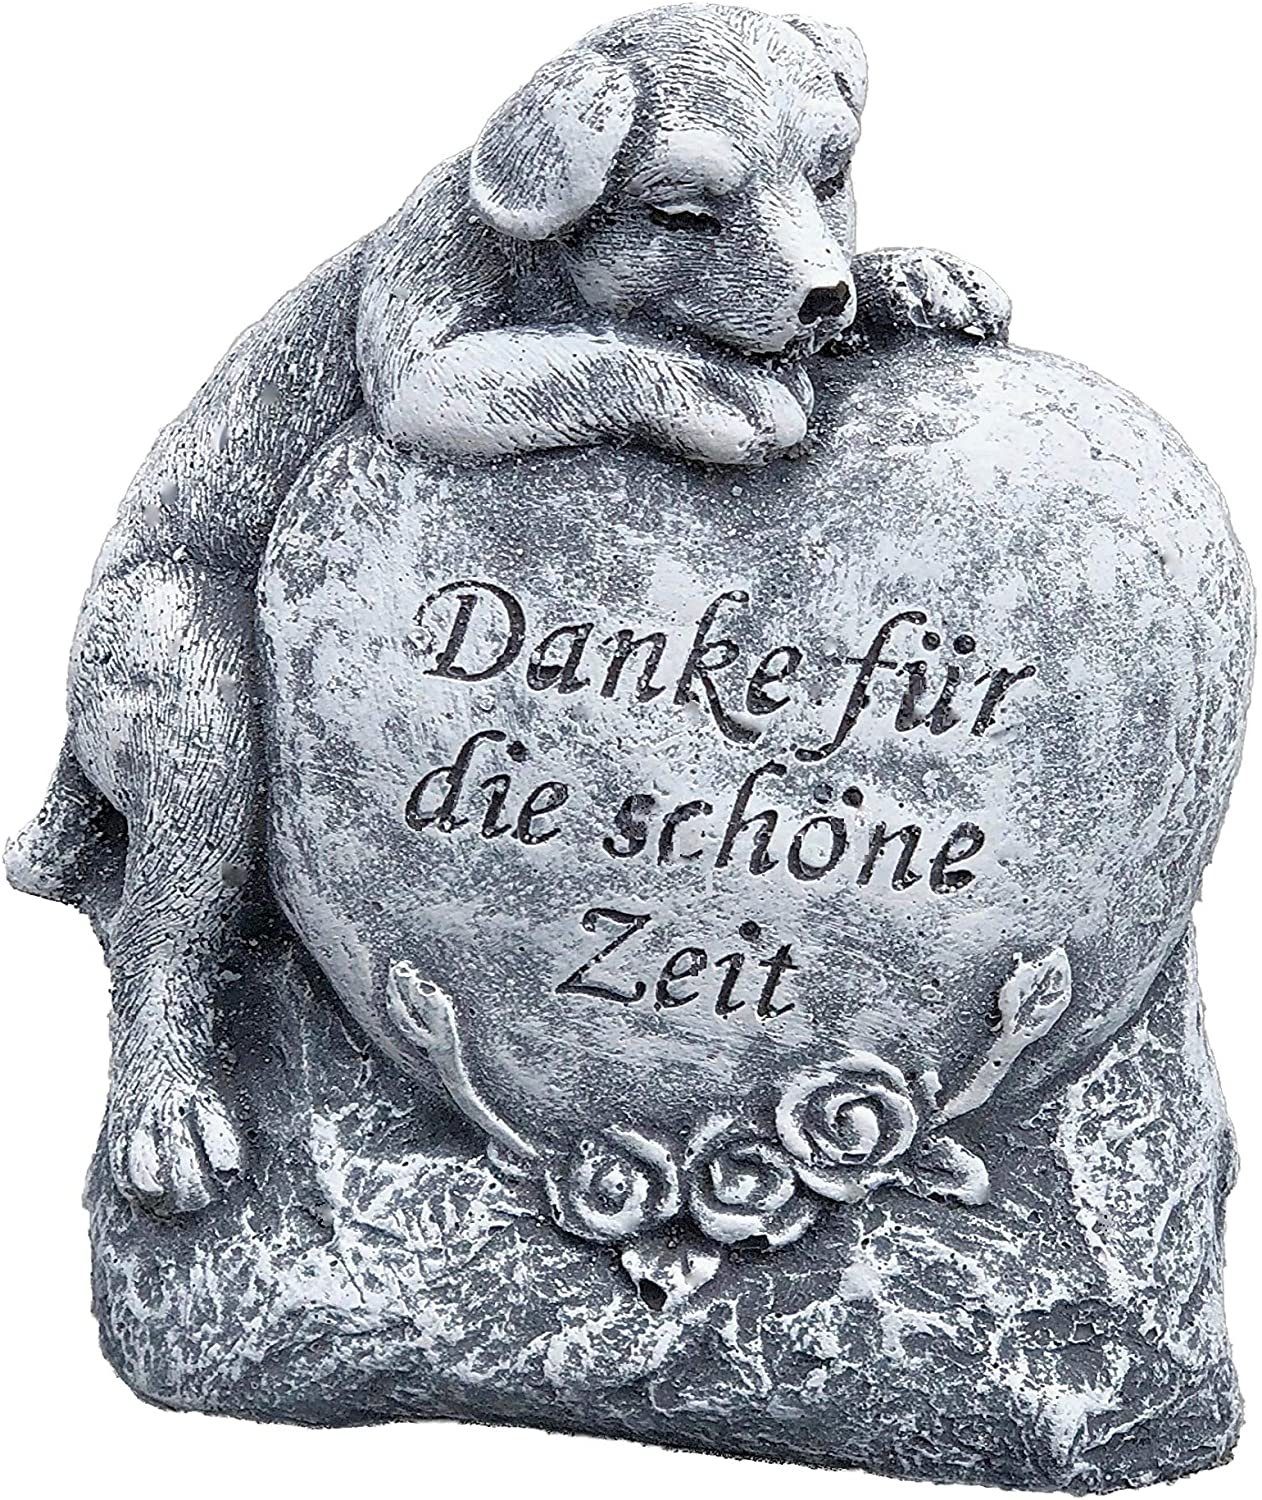 and Style schöne Hund die Stone für " Danke " Gartenfigur Zeit Grabschmuck Steinfigur